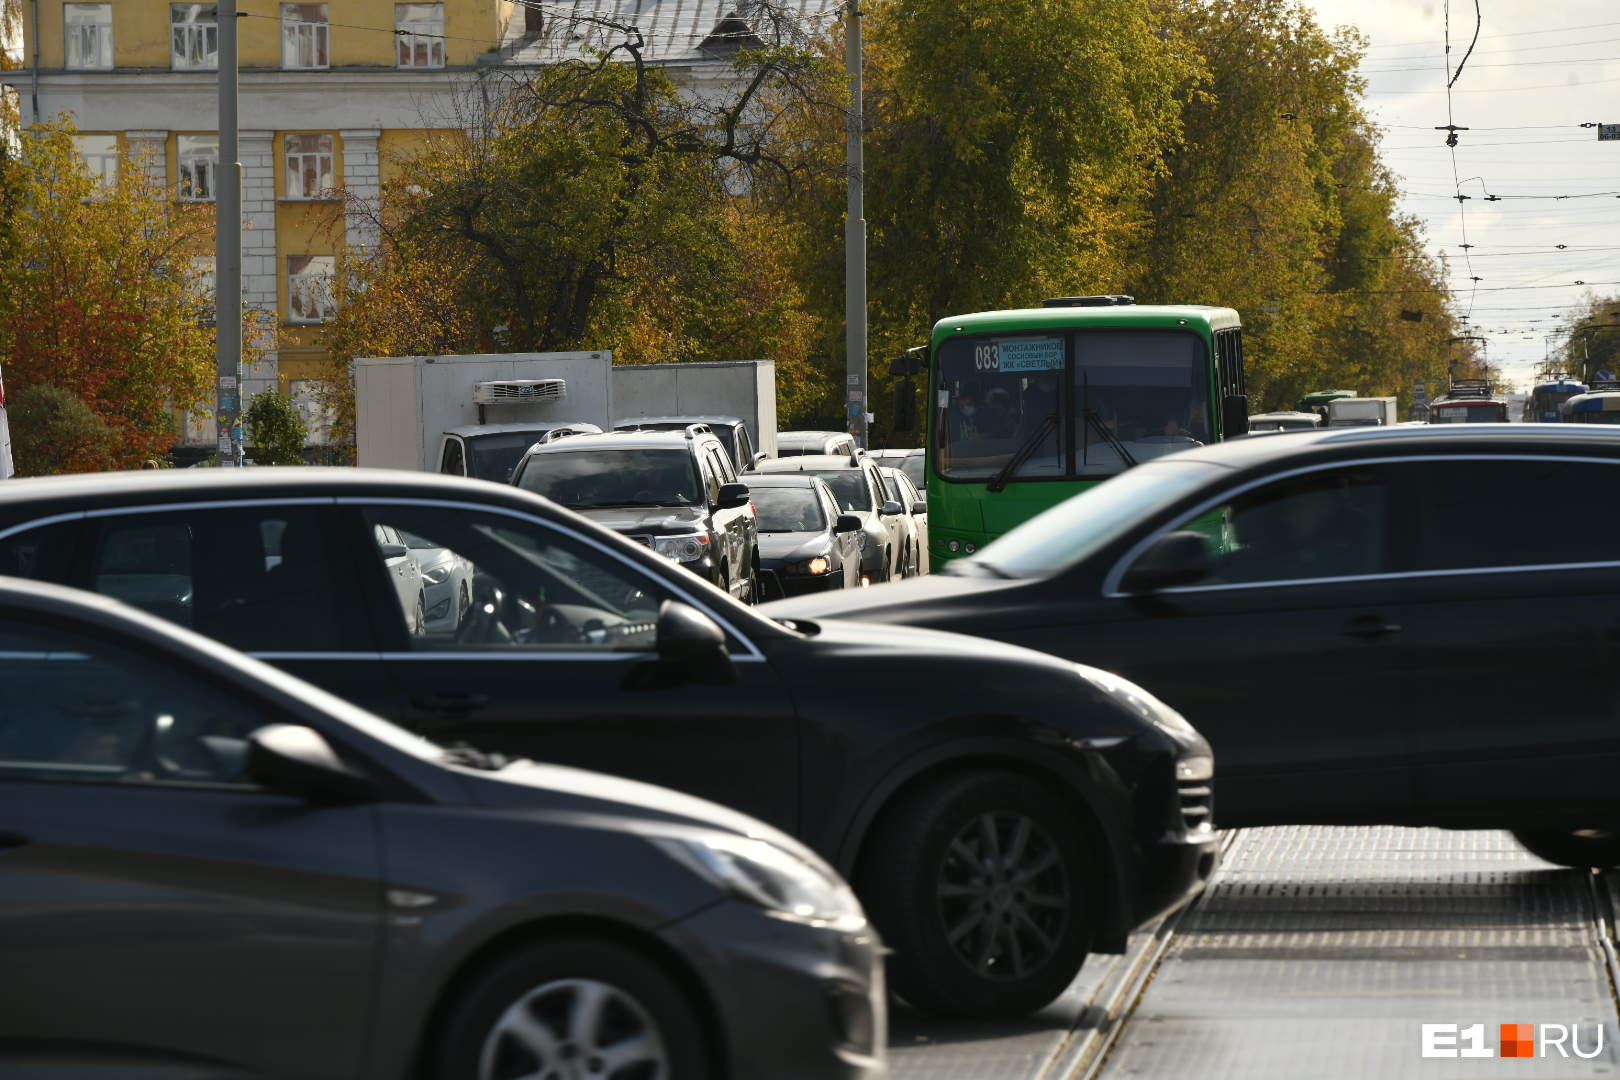 С начала 2021 года на 8 Марта — Большакова произошло три аварии из-за того, что водители не предоставляли преимущество встречному потоку при повороте налево